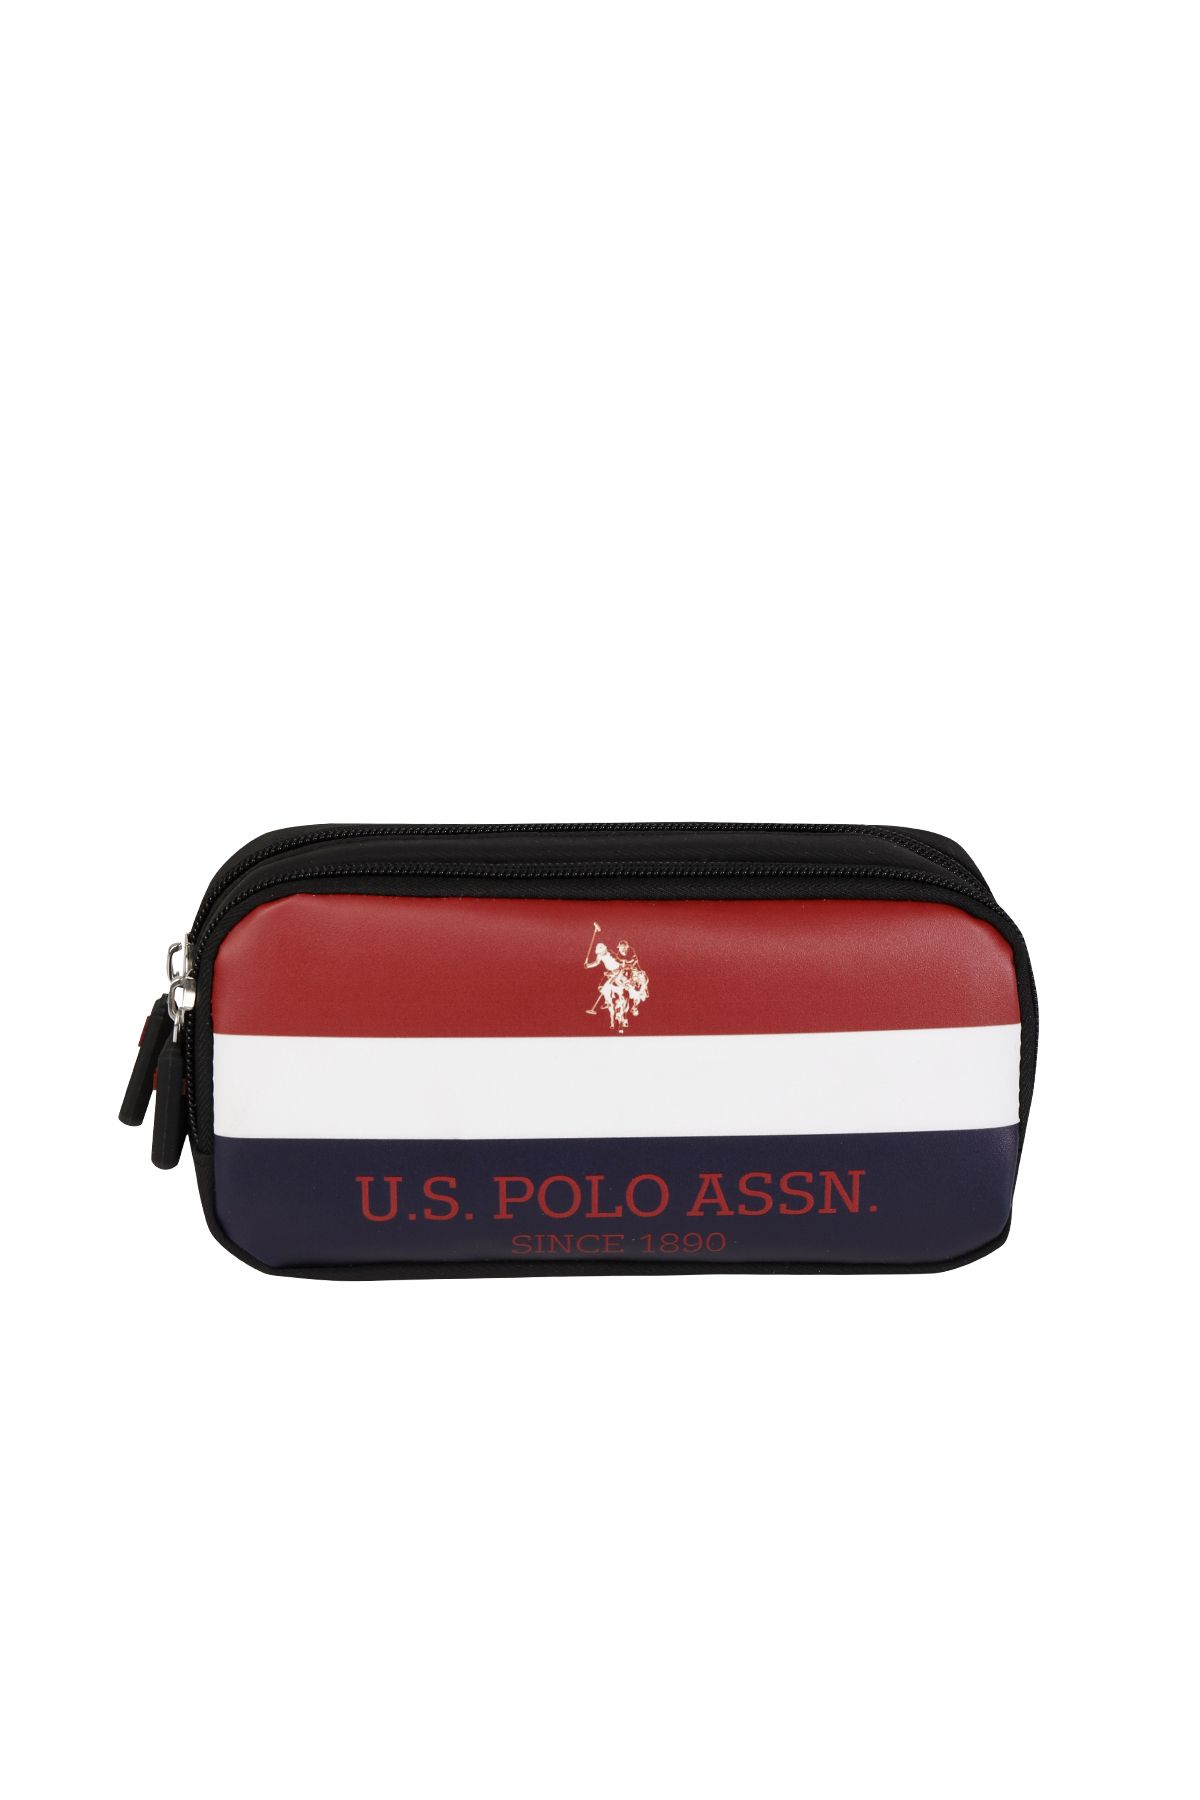 U.S. Polo Assn. U.S Polo Kalem Çantası Kalemlik PLKLK24177